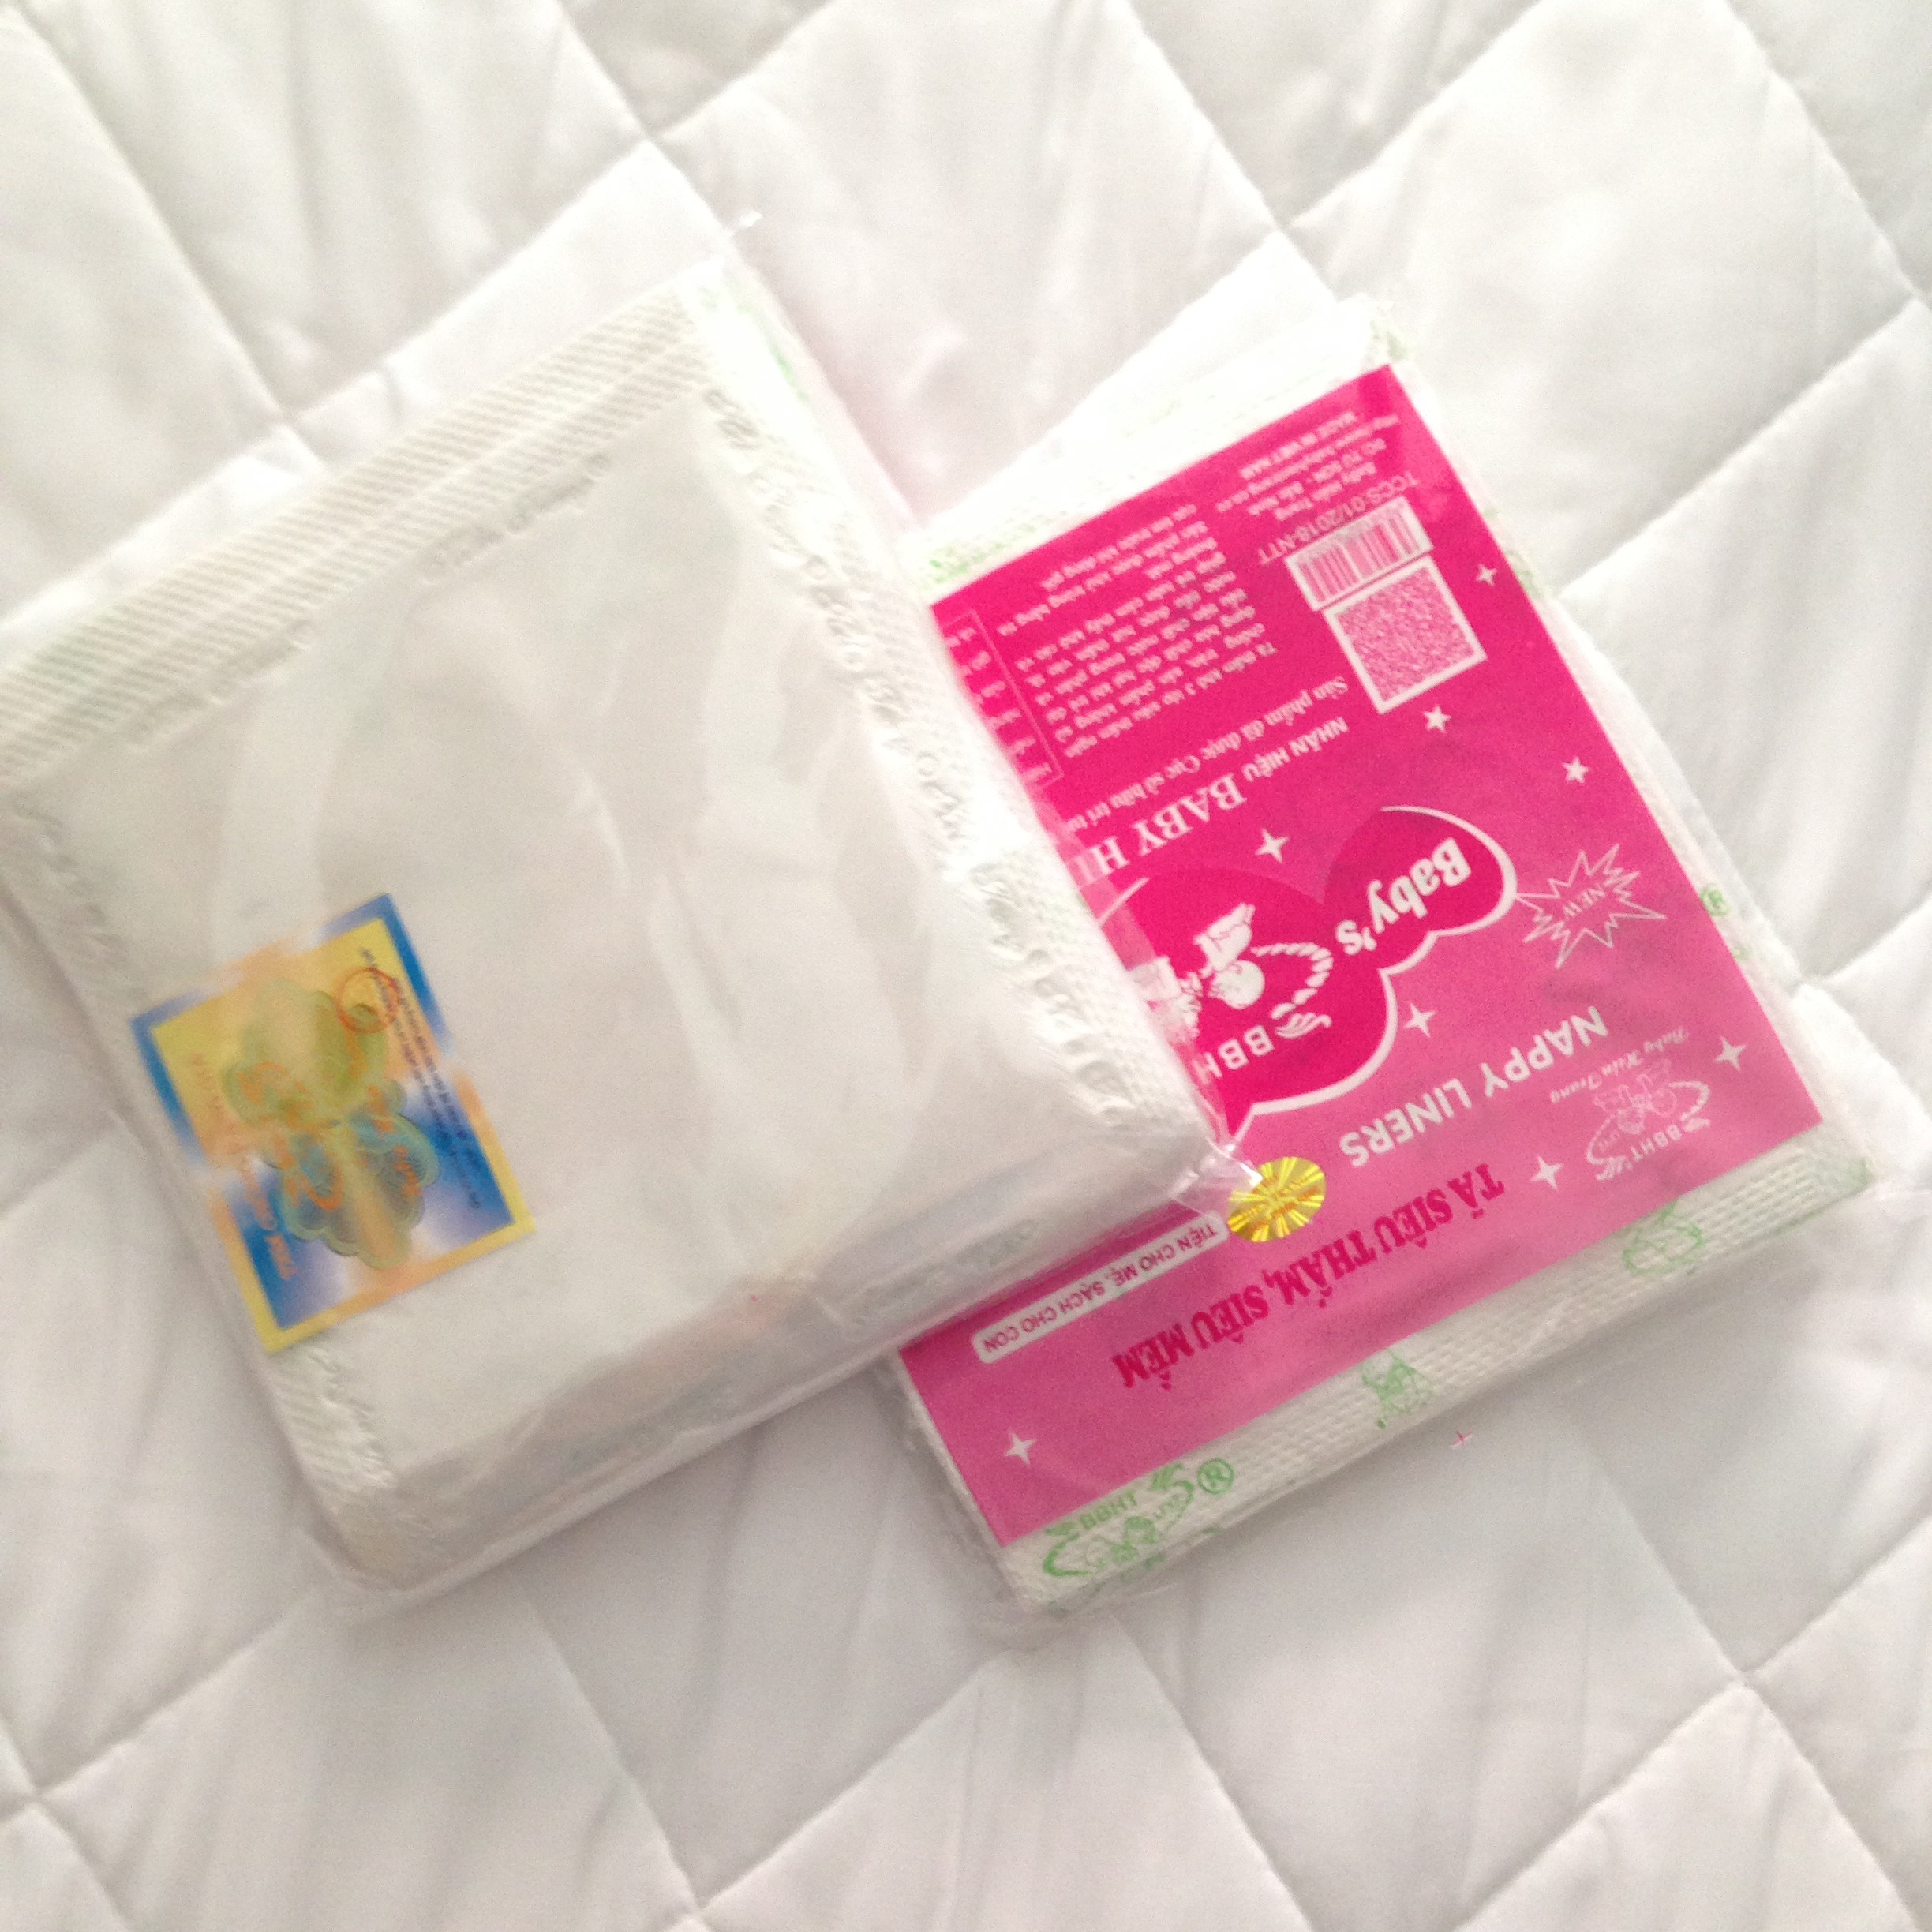 Khăn tắm 4 lớp cotton mềm cho bé (80x80cm) - Tặng kèm 01 bịch giấy lót phân su cho bé